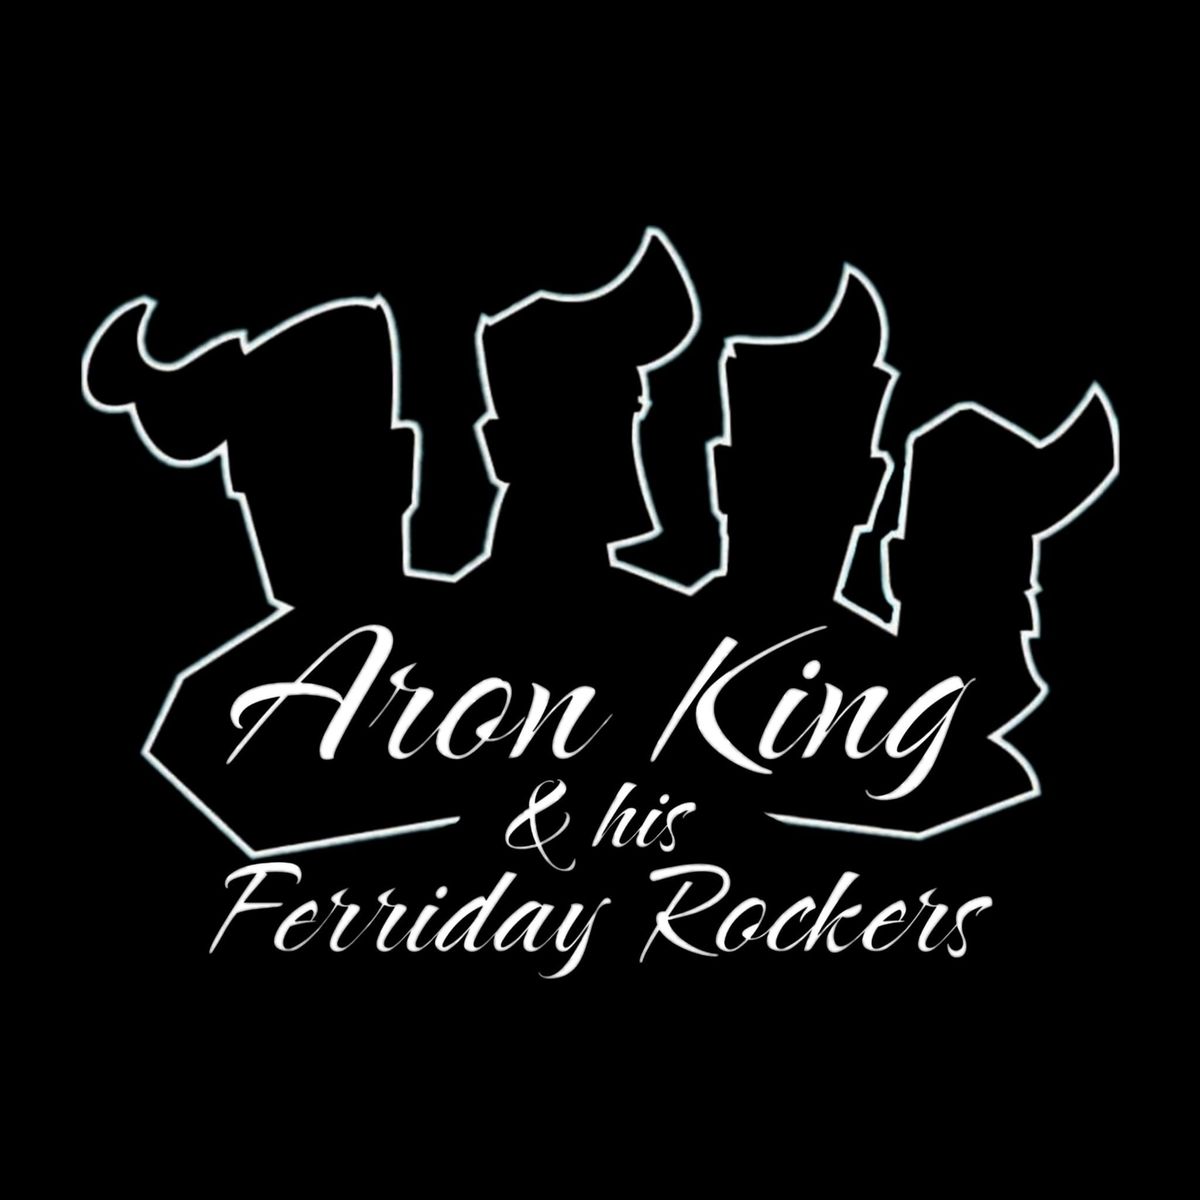 Golden Oldies Wettenberg - Aron King & his Ferriday Rockers LIVE